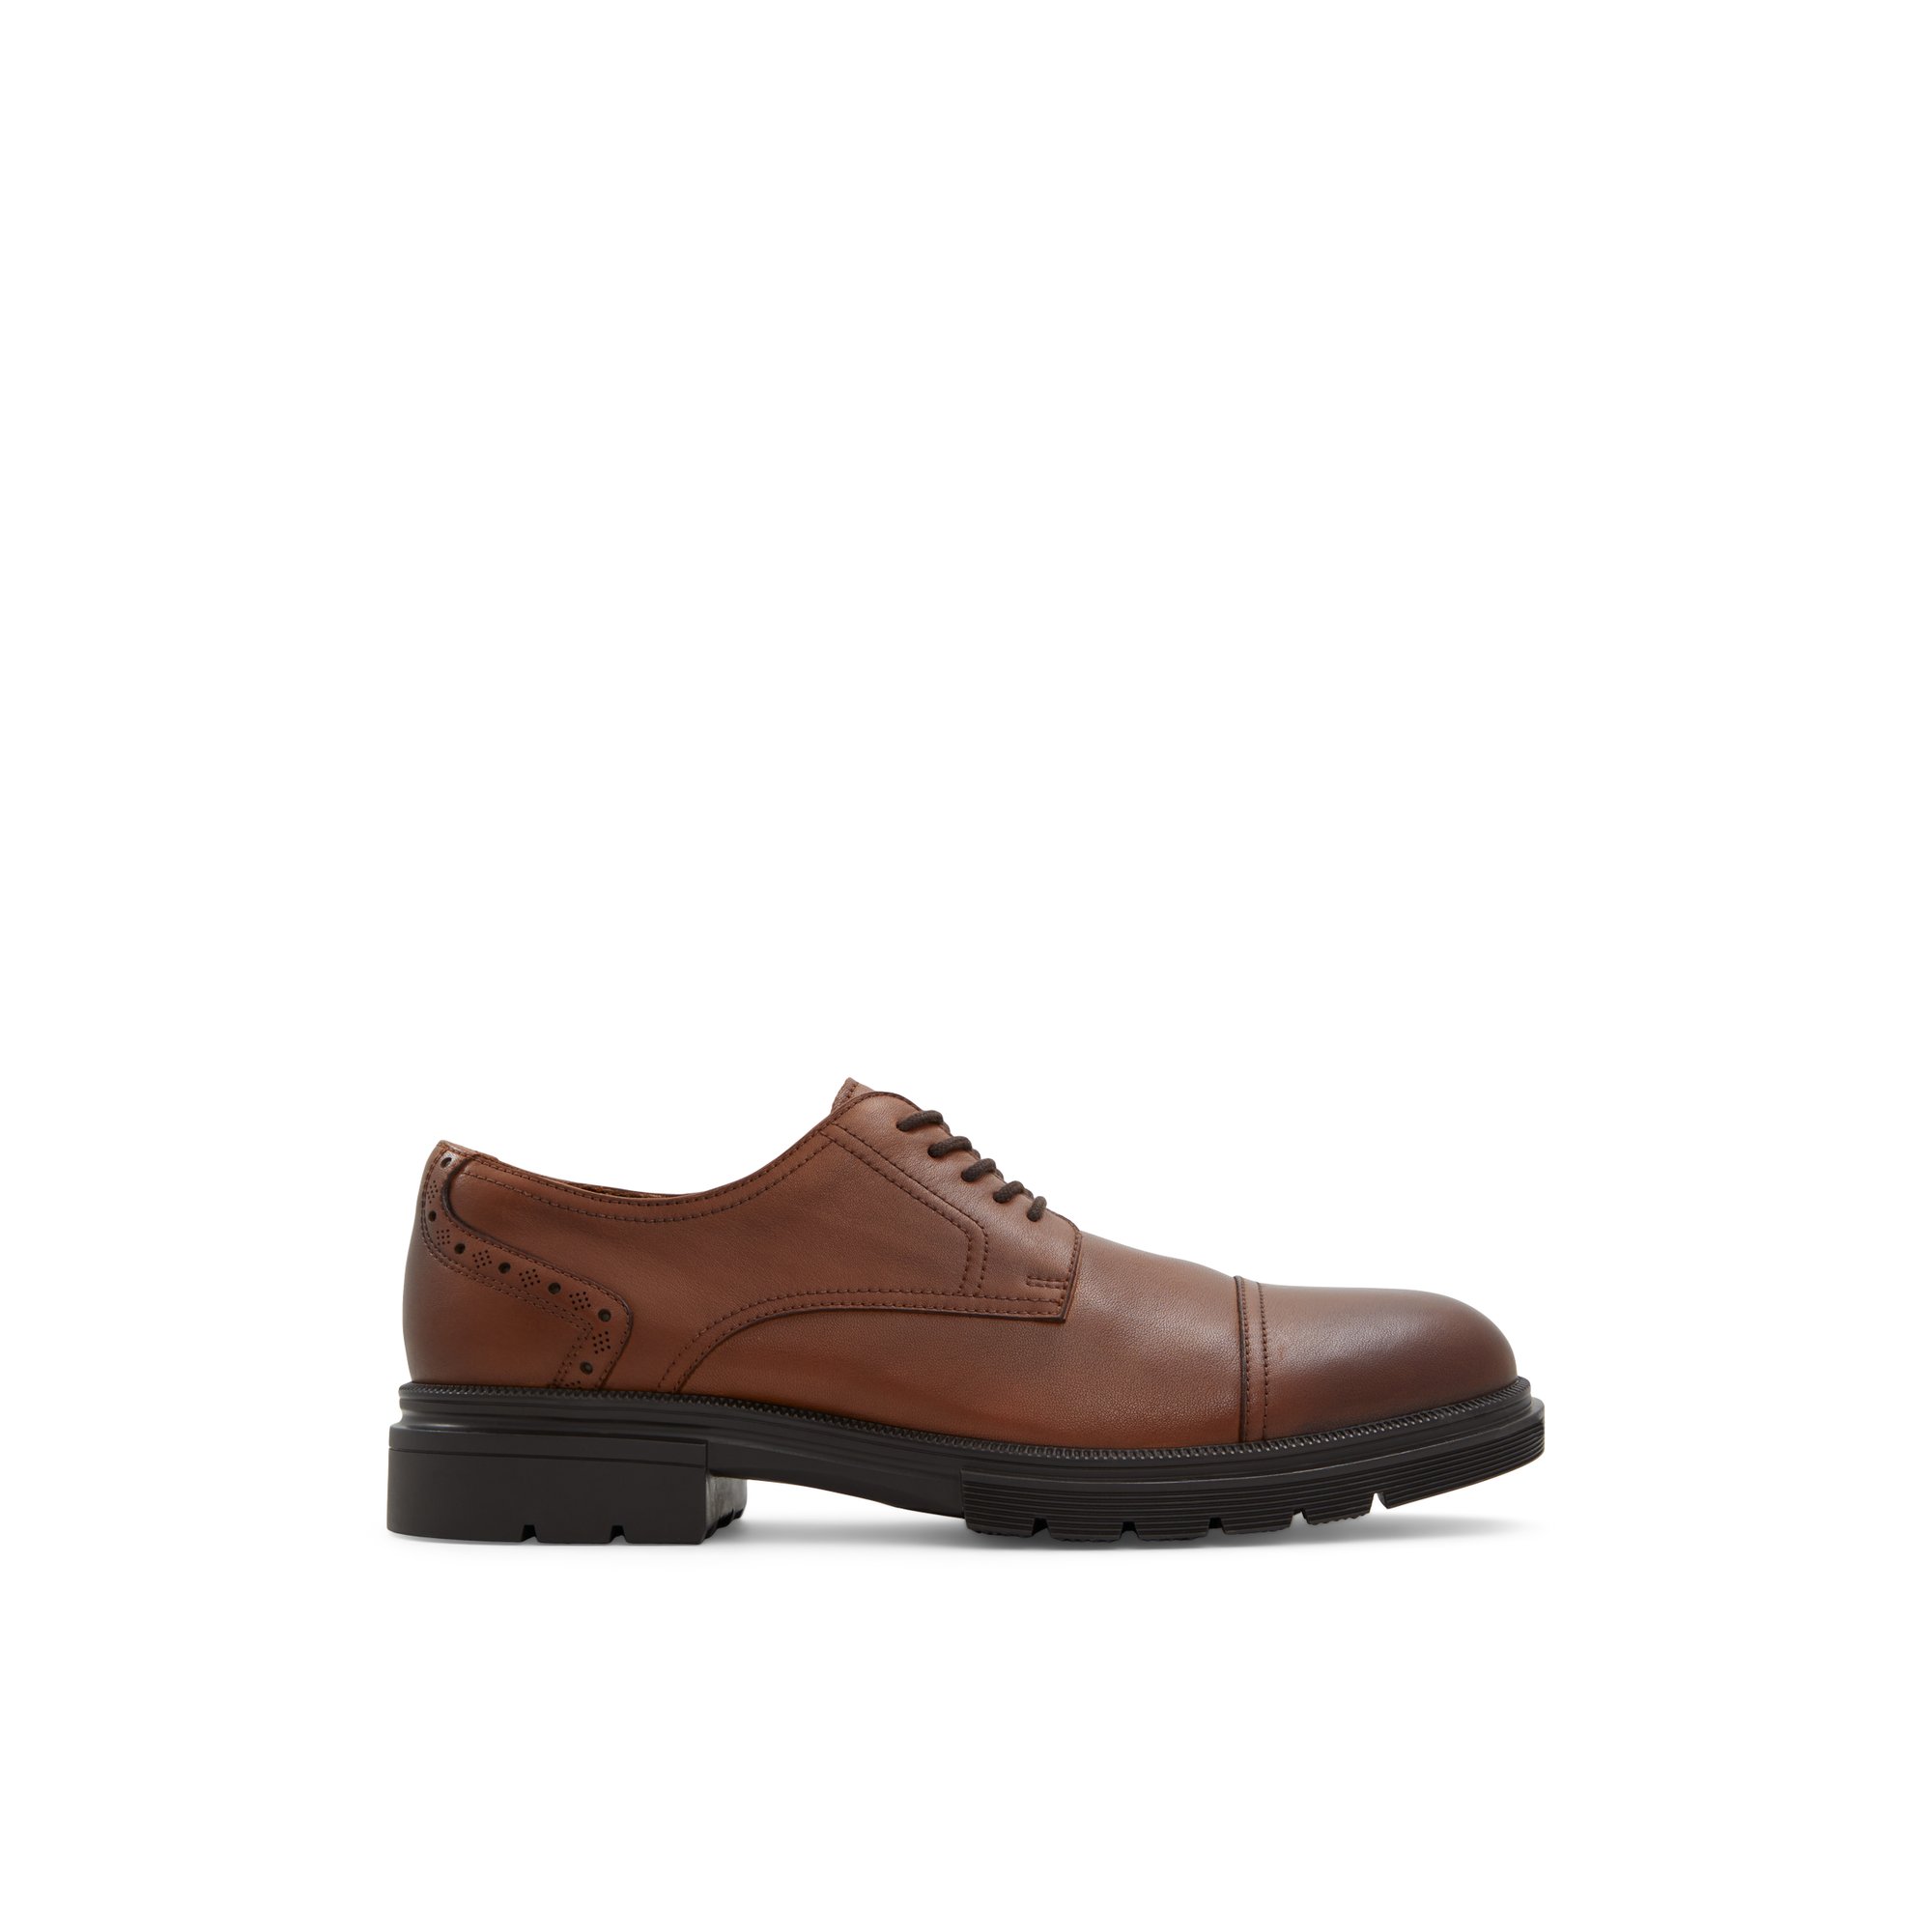 ALDO Geller - Men's Dress Shoes - Brown